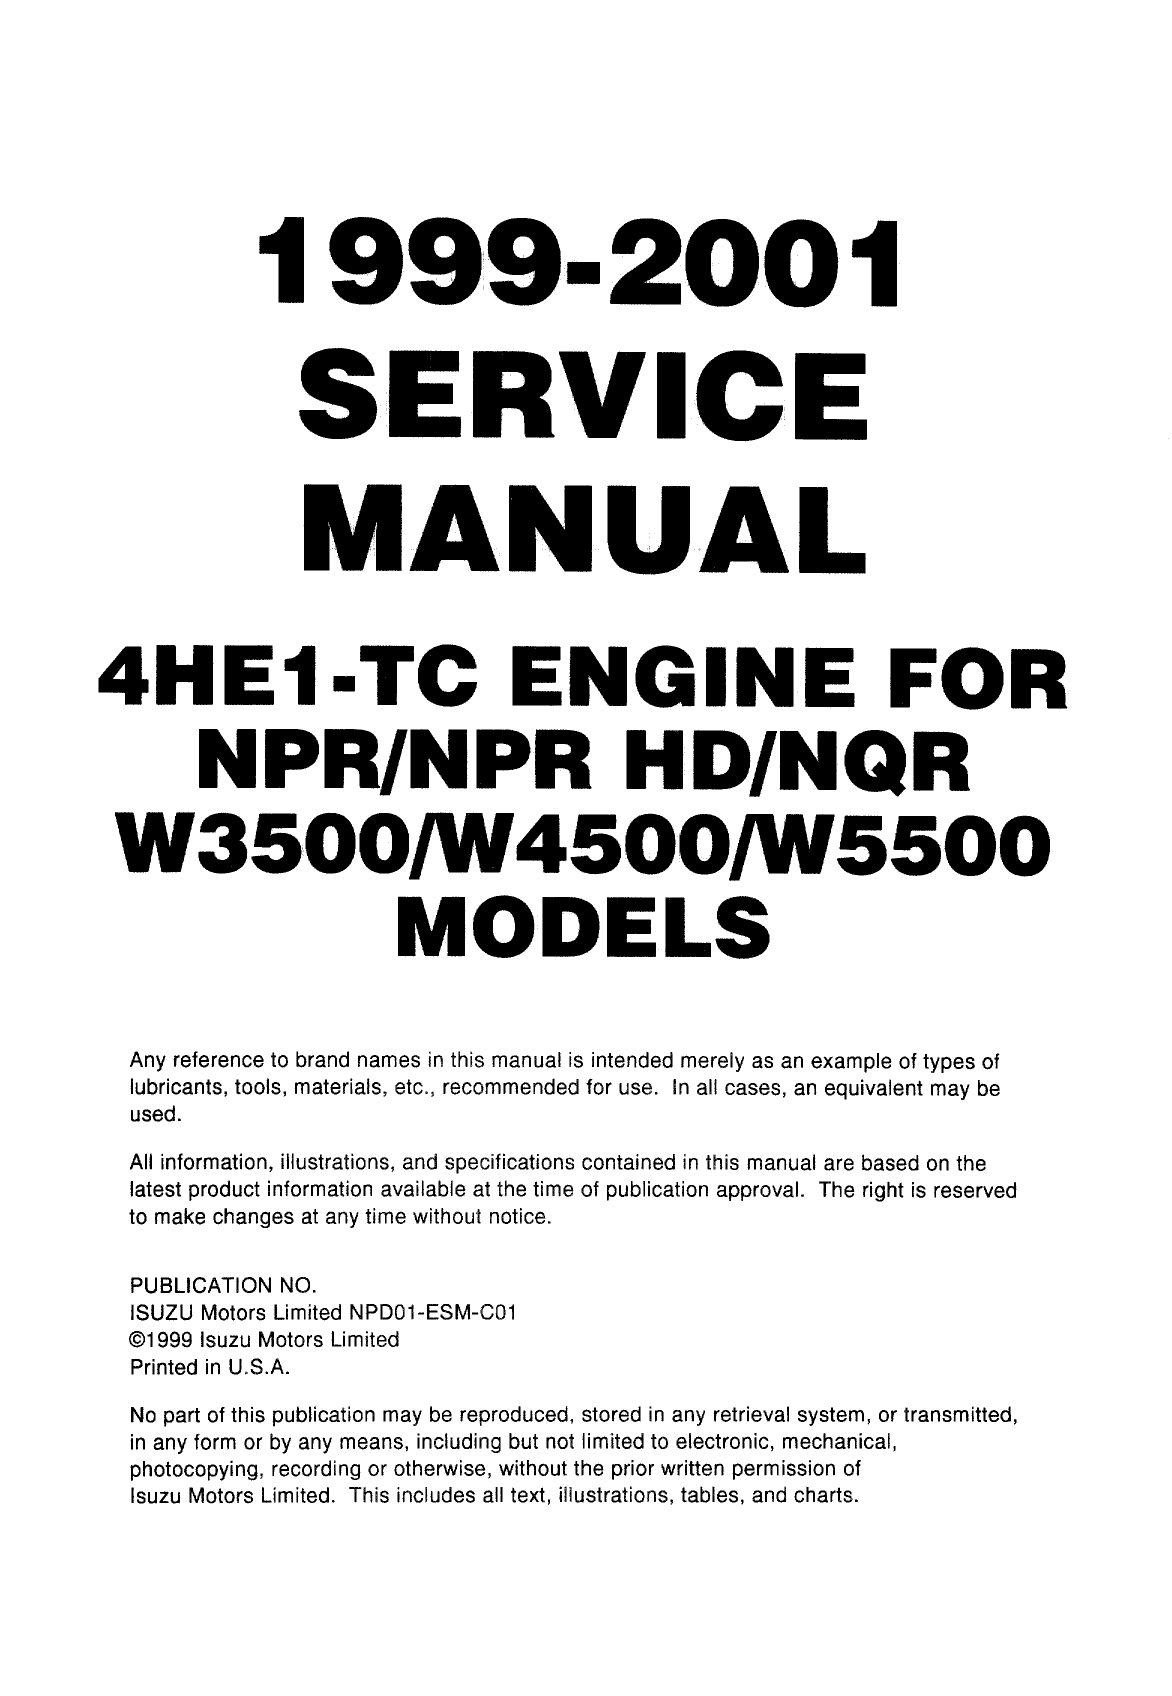 1999-2001 IsuzuCHEVY GMC NPR, HD NQR, W3500, W4500, W5500, 4HE1-TC engine service manual Preview image 4